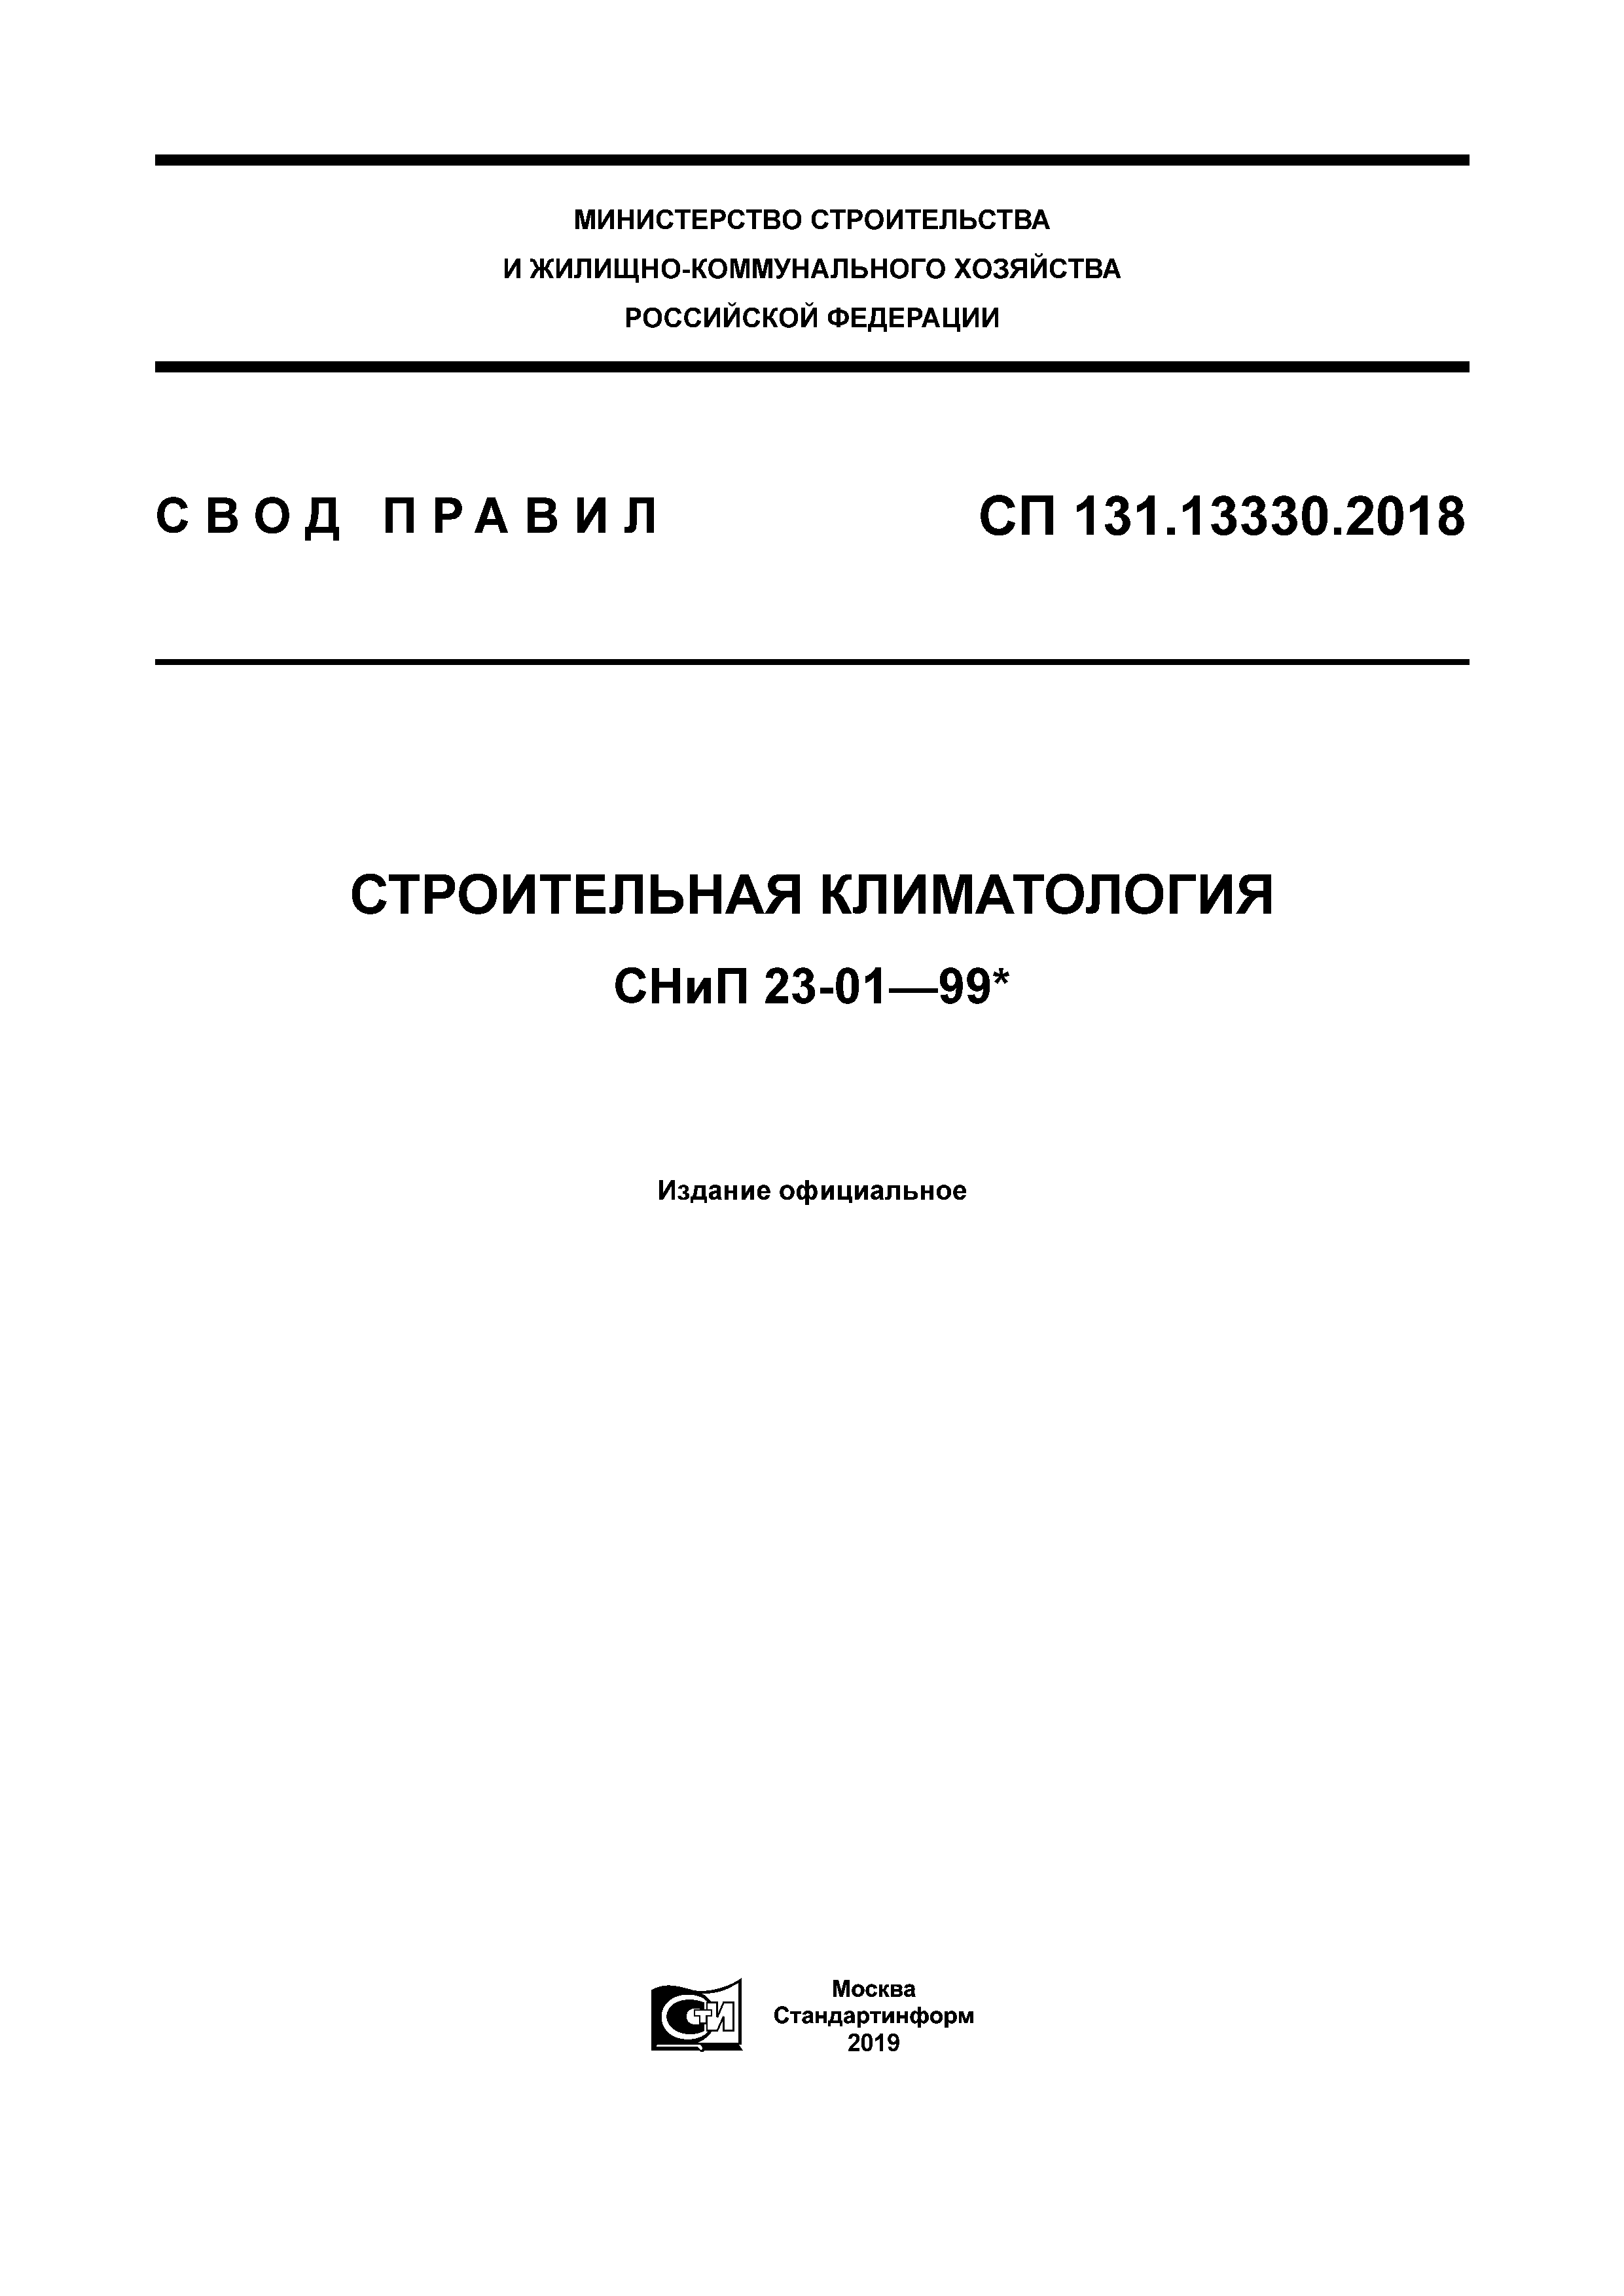 СП 131.13330.2018